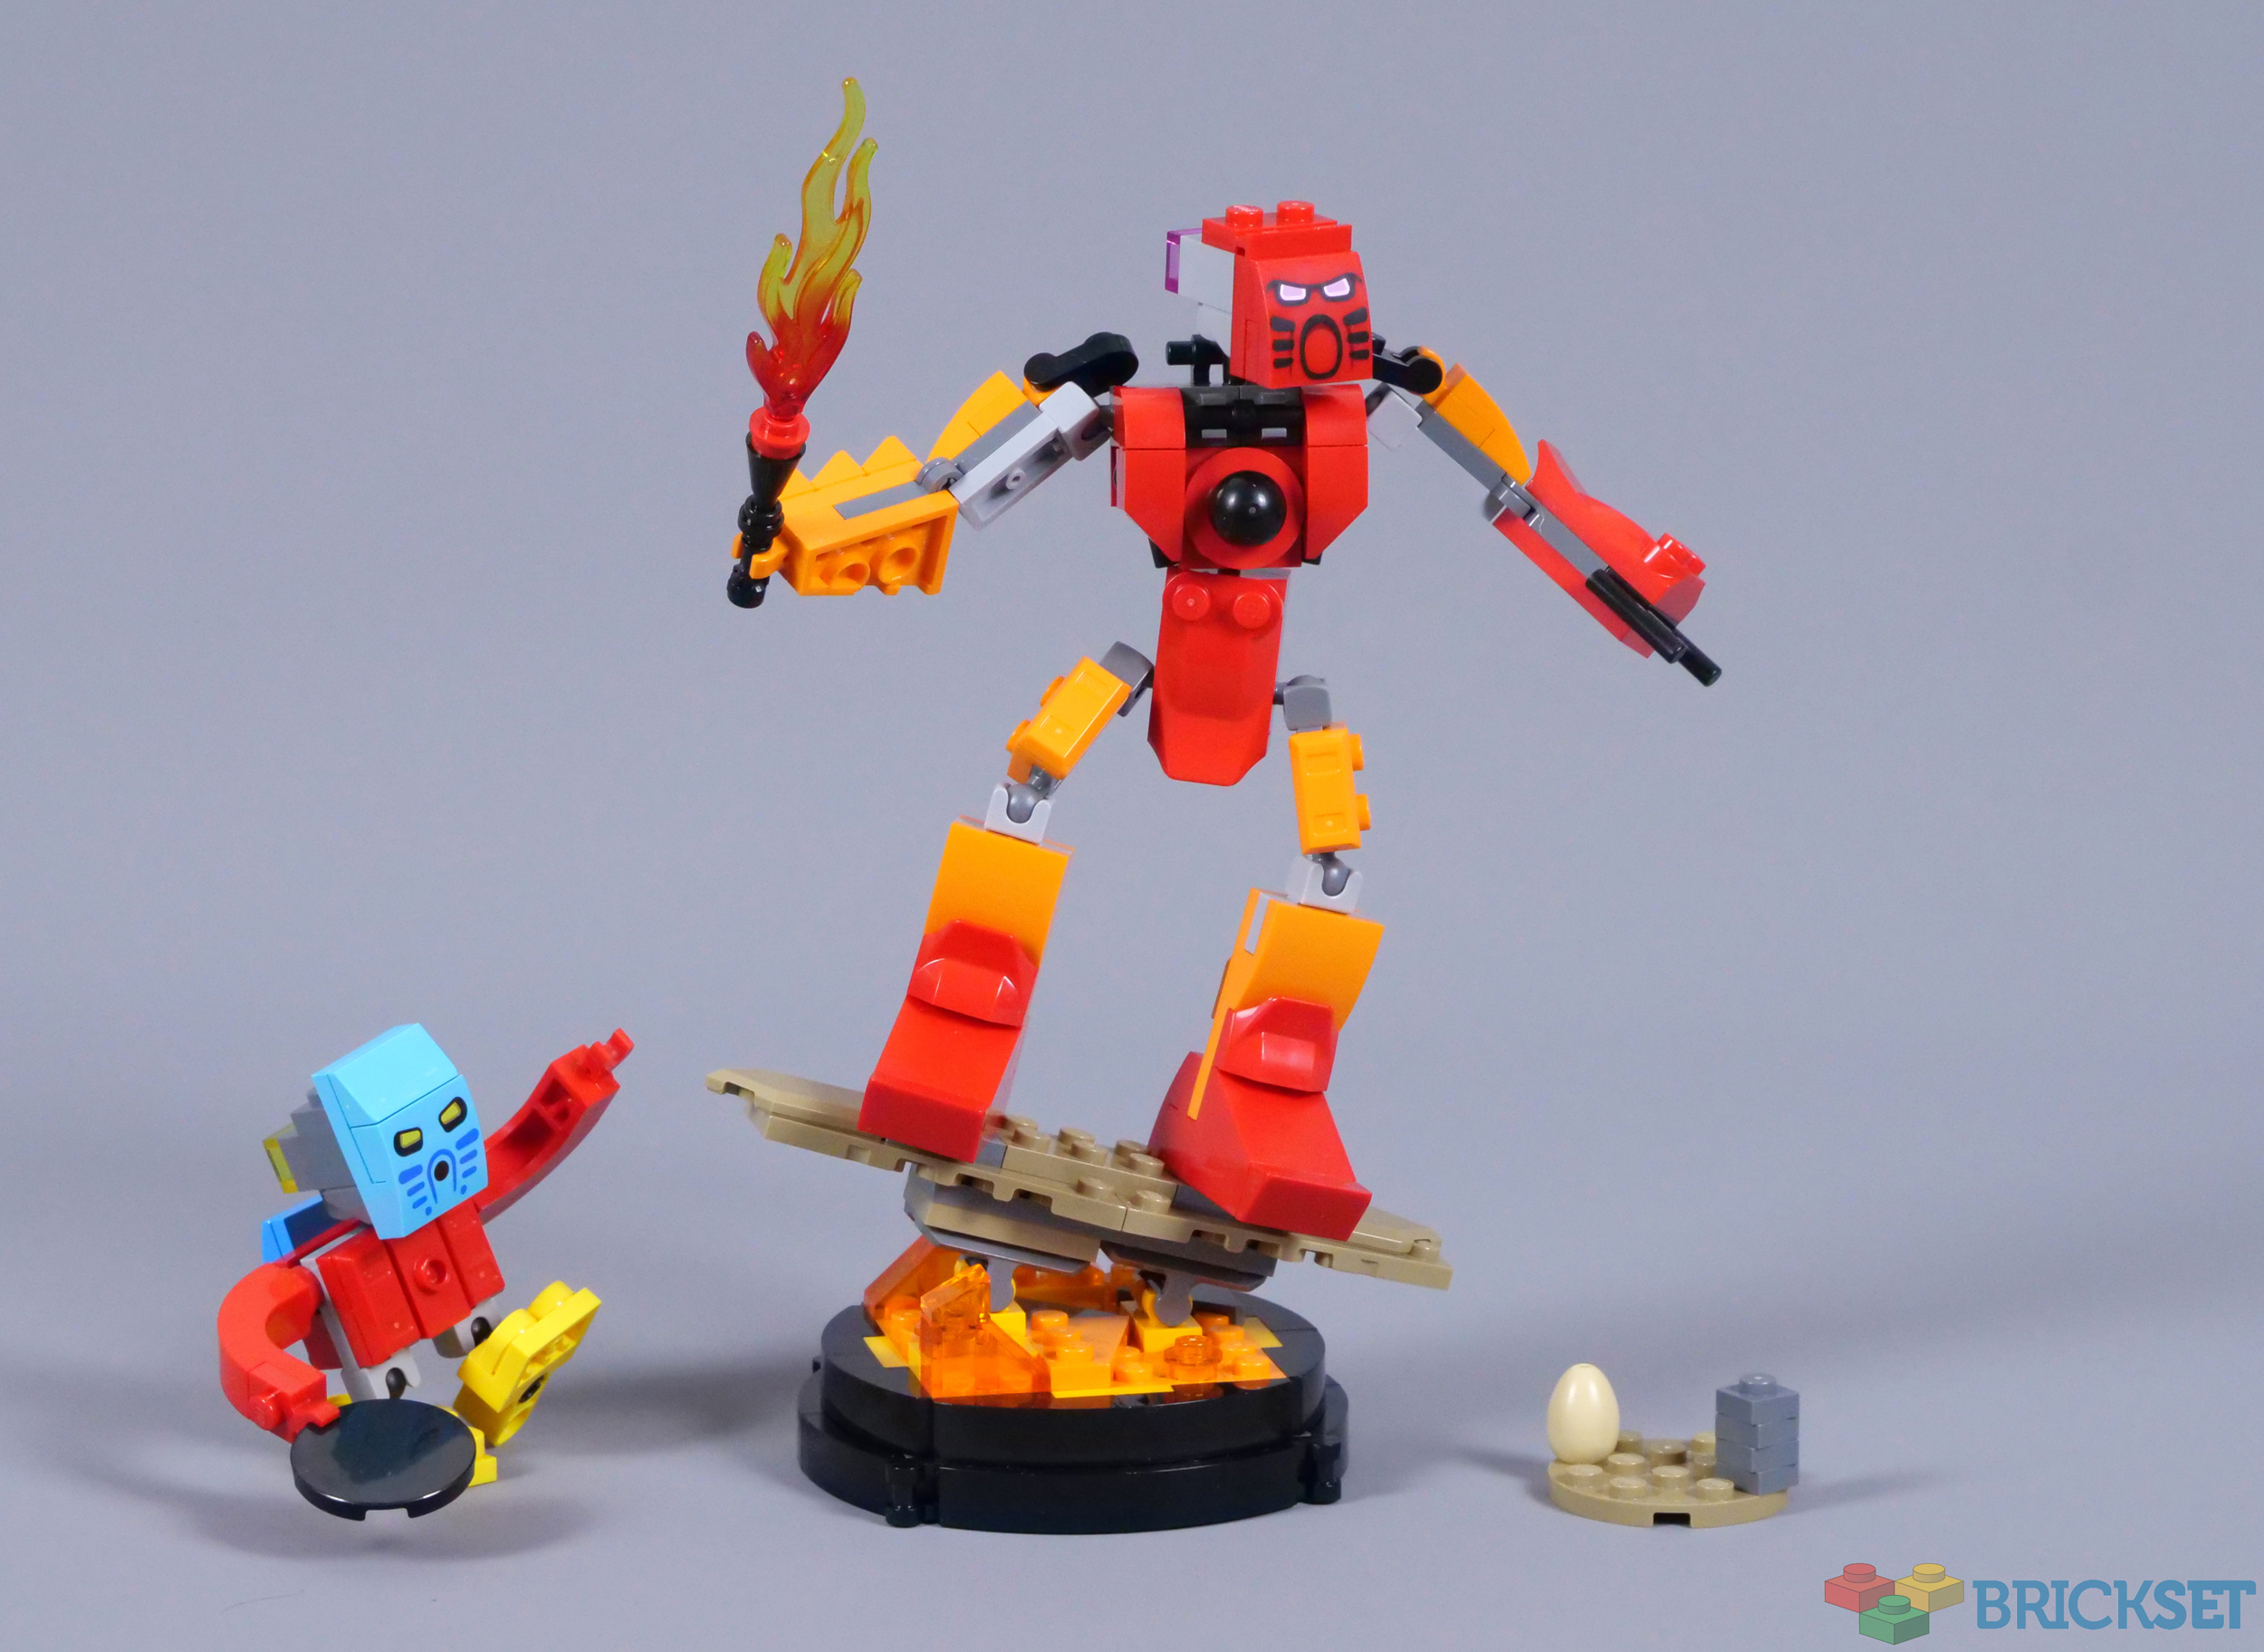 LEGO Bionicle returns in 2023 with 40581 BIONICLE Tahu and Takua GWP